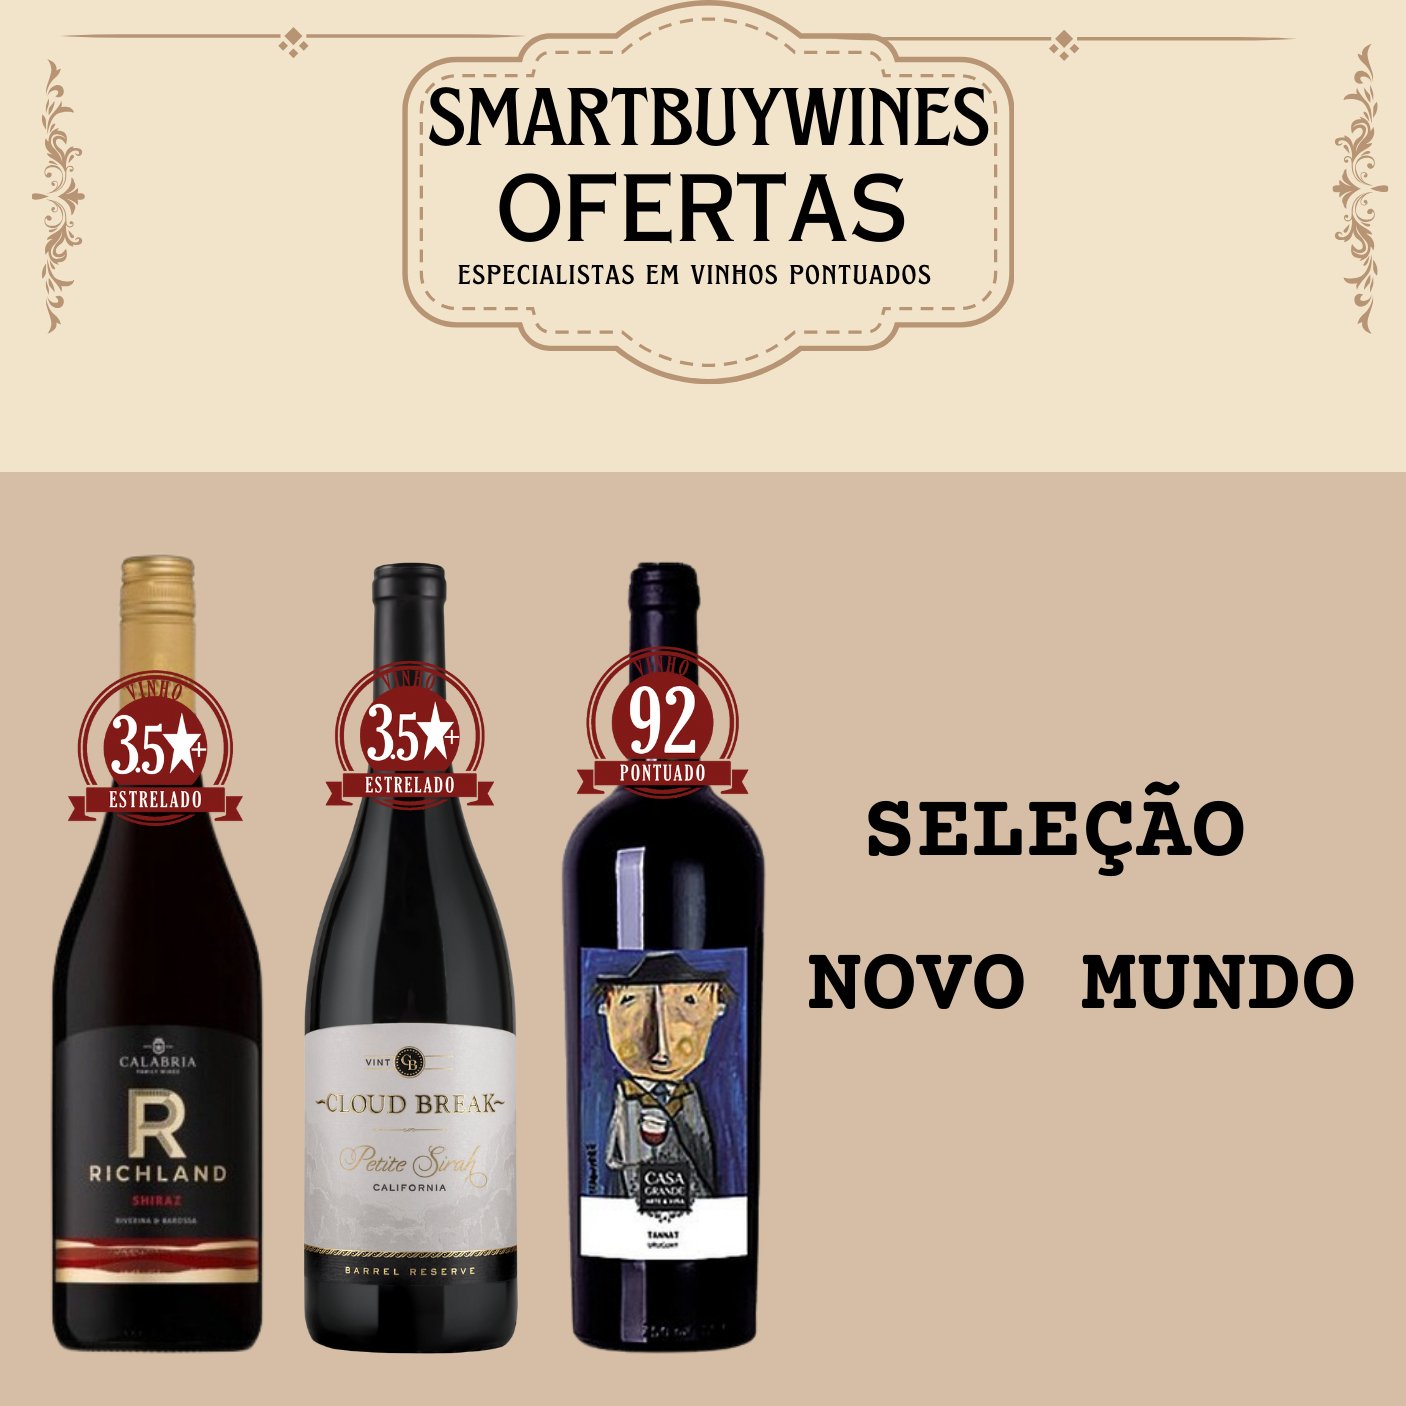 Seleção em oferta - Novo Mundo - caixa de 3 vinhos - SmartBuyWines.com.br